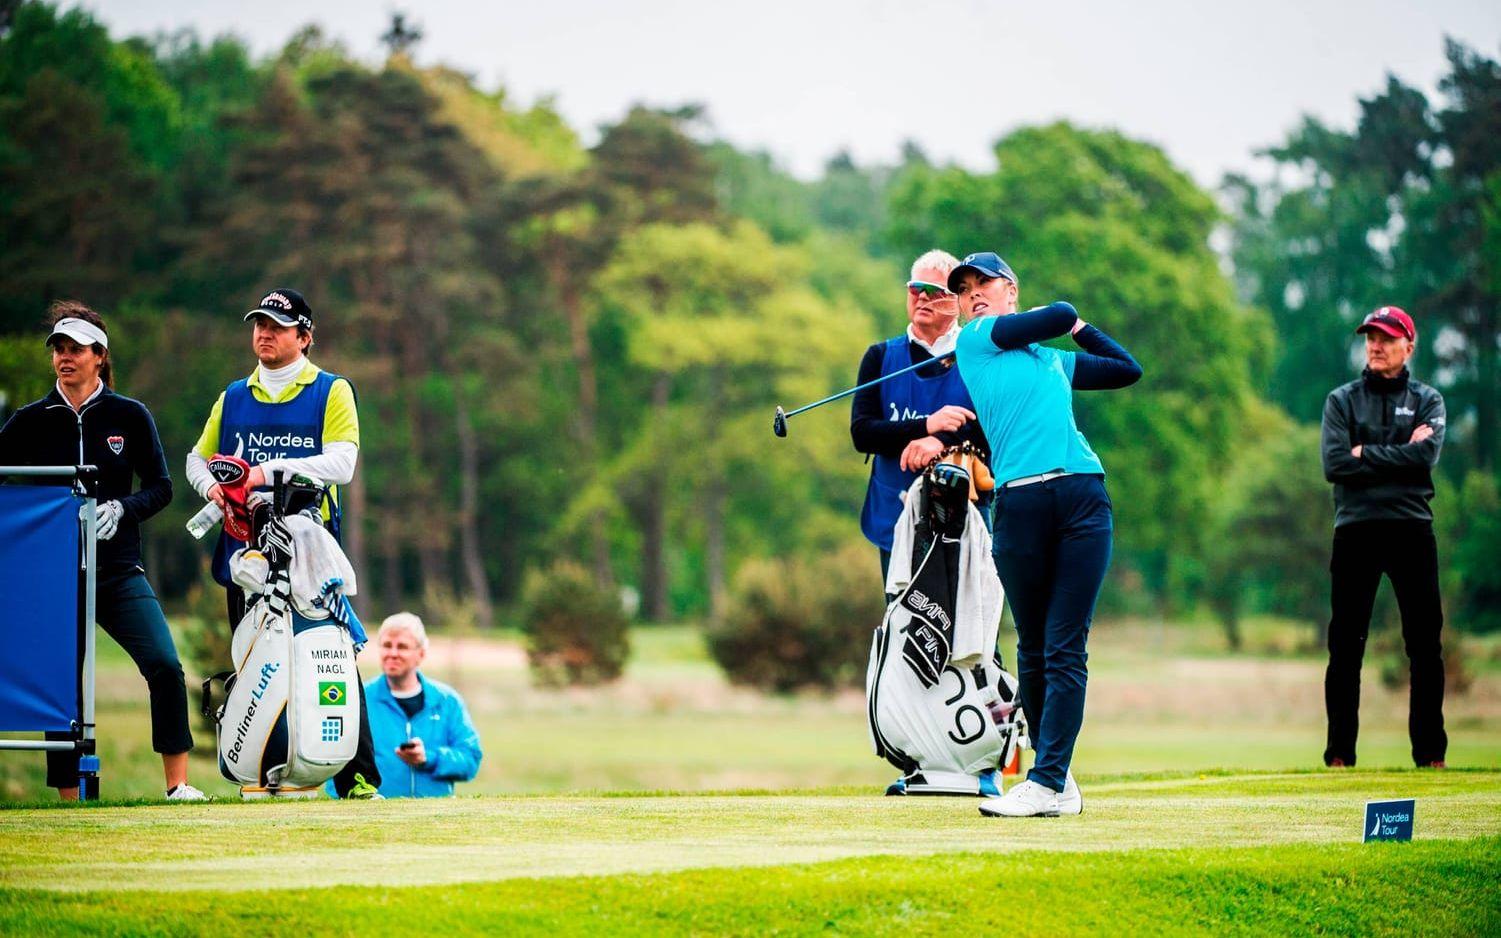 9. (4) Lynn Carlsson - Golf. Har haft ett tufft år. Det tuffa andra året på Europatouren. Men en 14:e plats som bäst och en tredjeplats i PGA-tävlingen i Halmstad lyfter denna tjej som är stor på sociala medier.